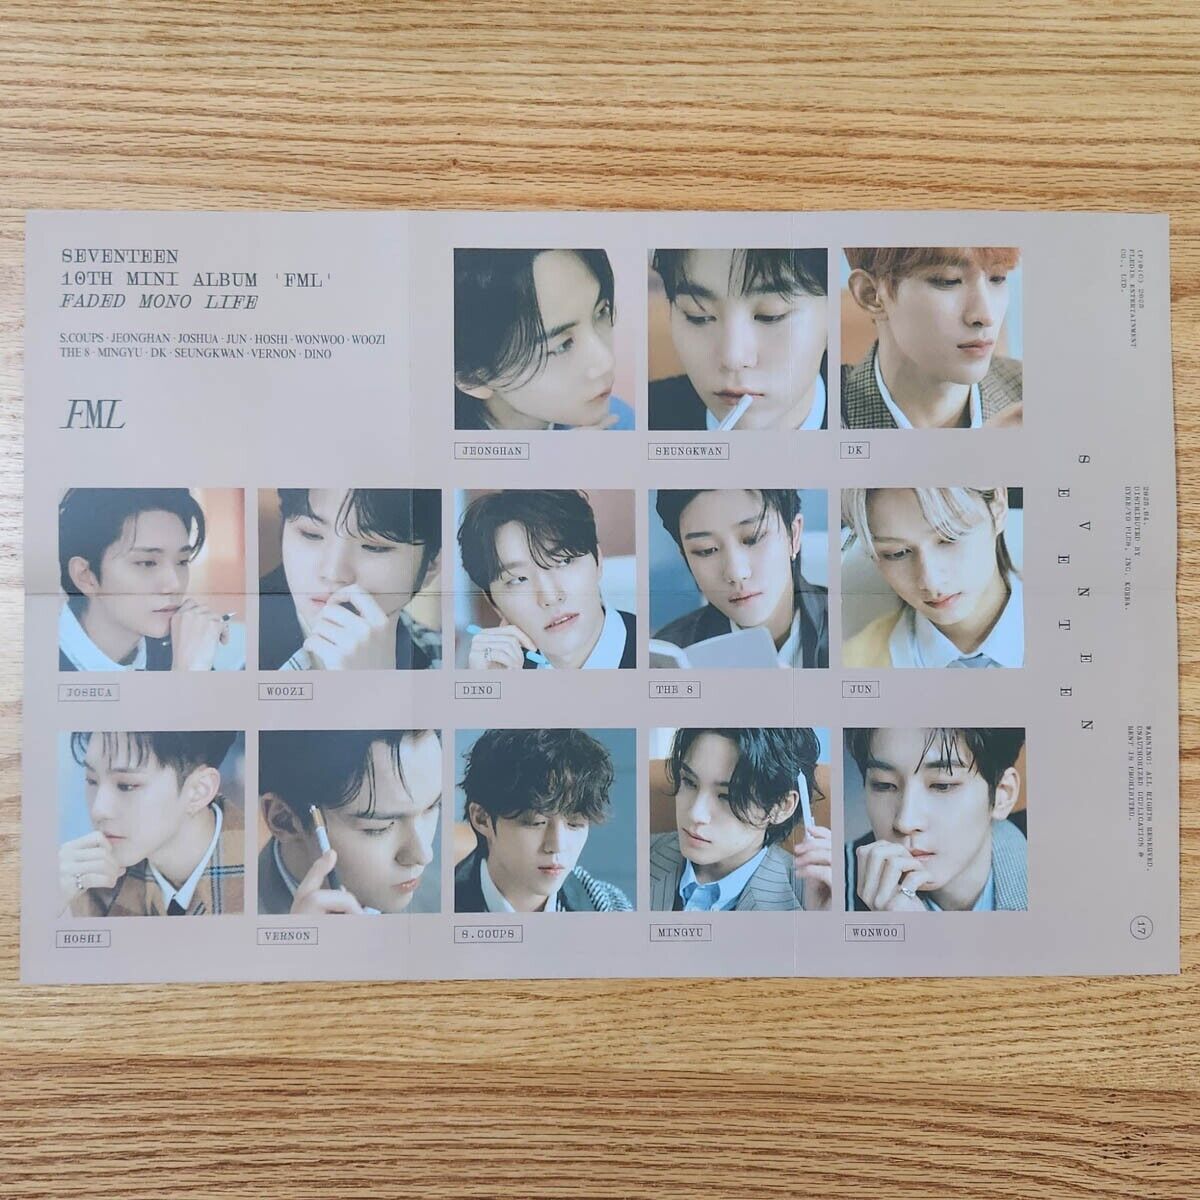 Group Official Folded Poster Seventeen 10th Mini Album FML SVT Genuine Kpop